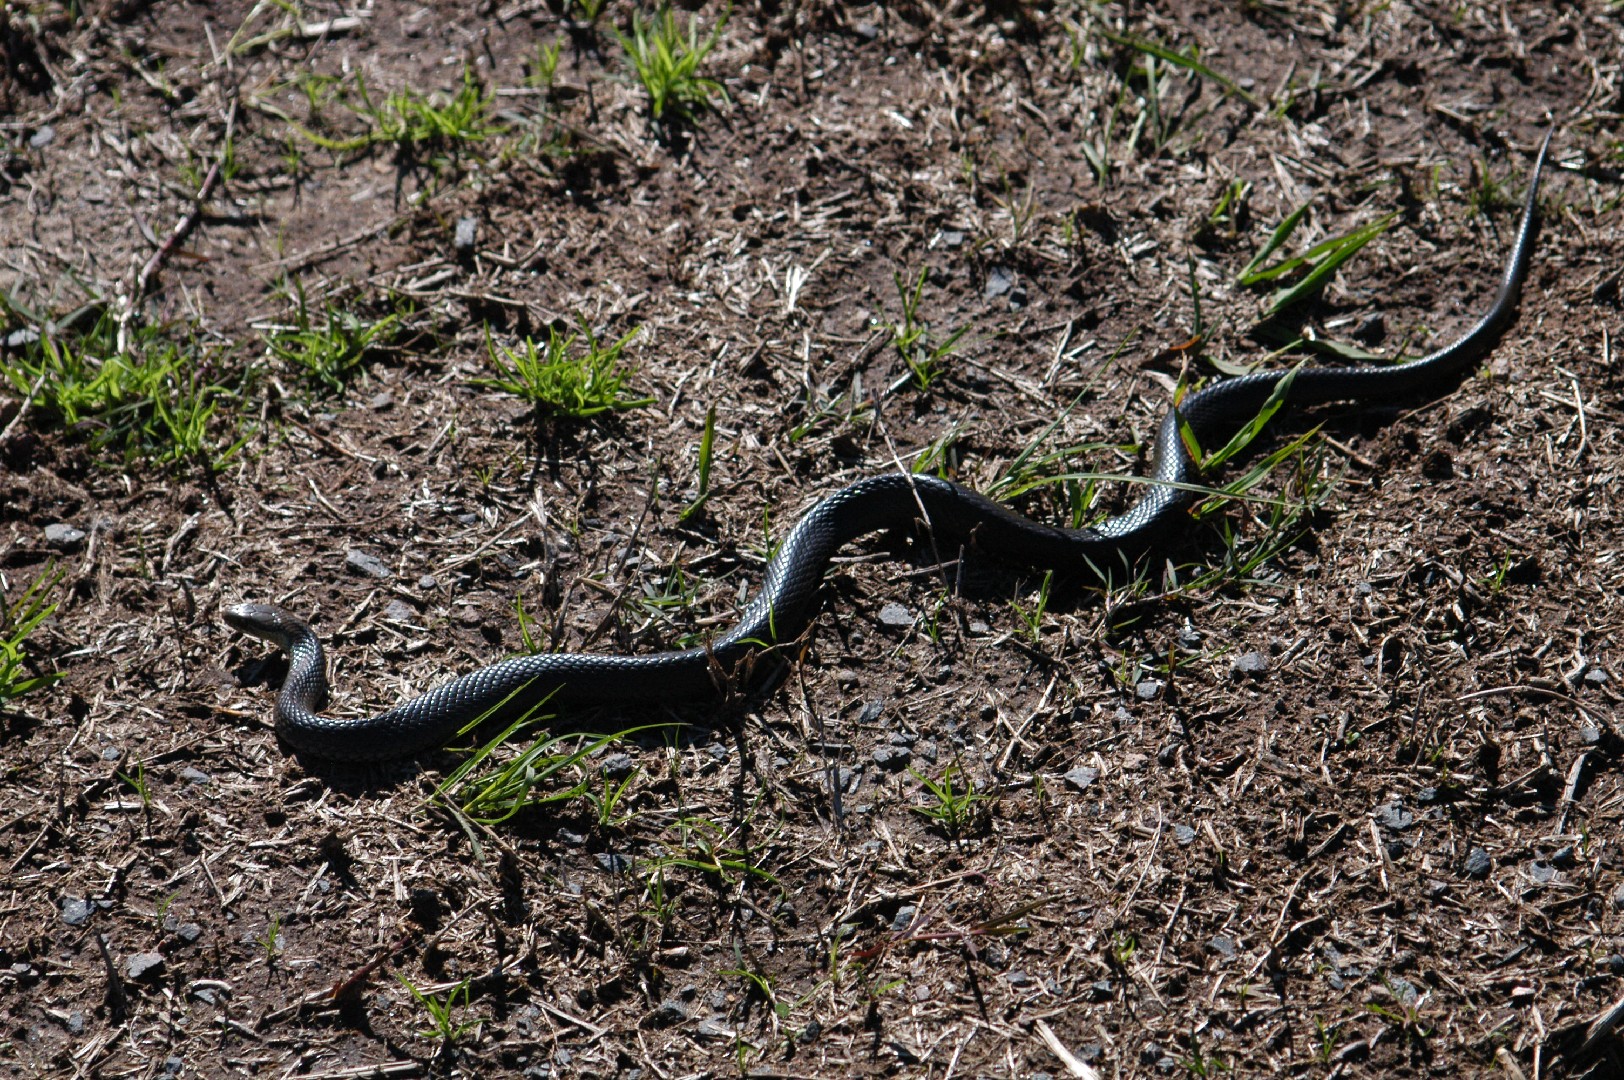 Marsh snake (Hemiaspis signata)